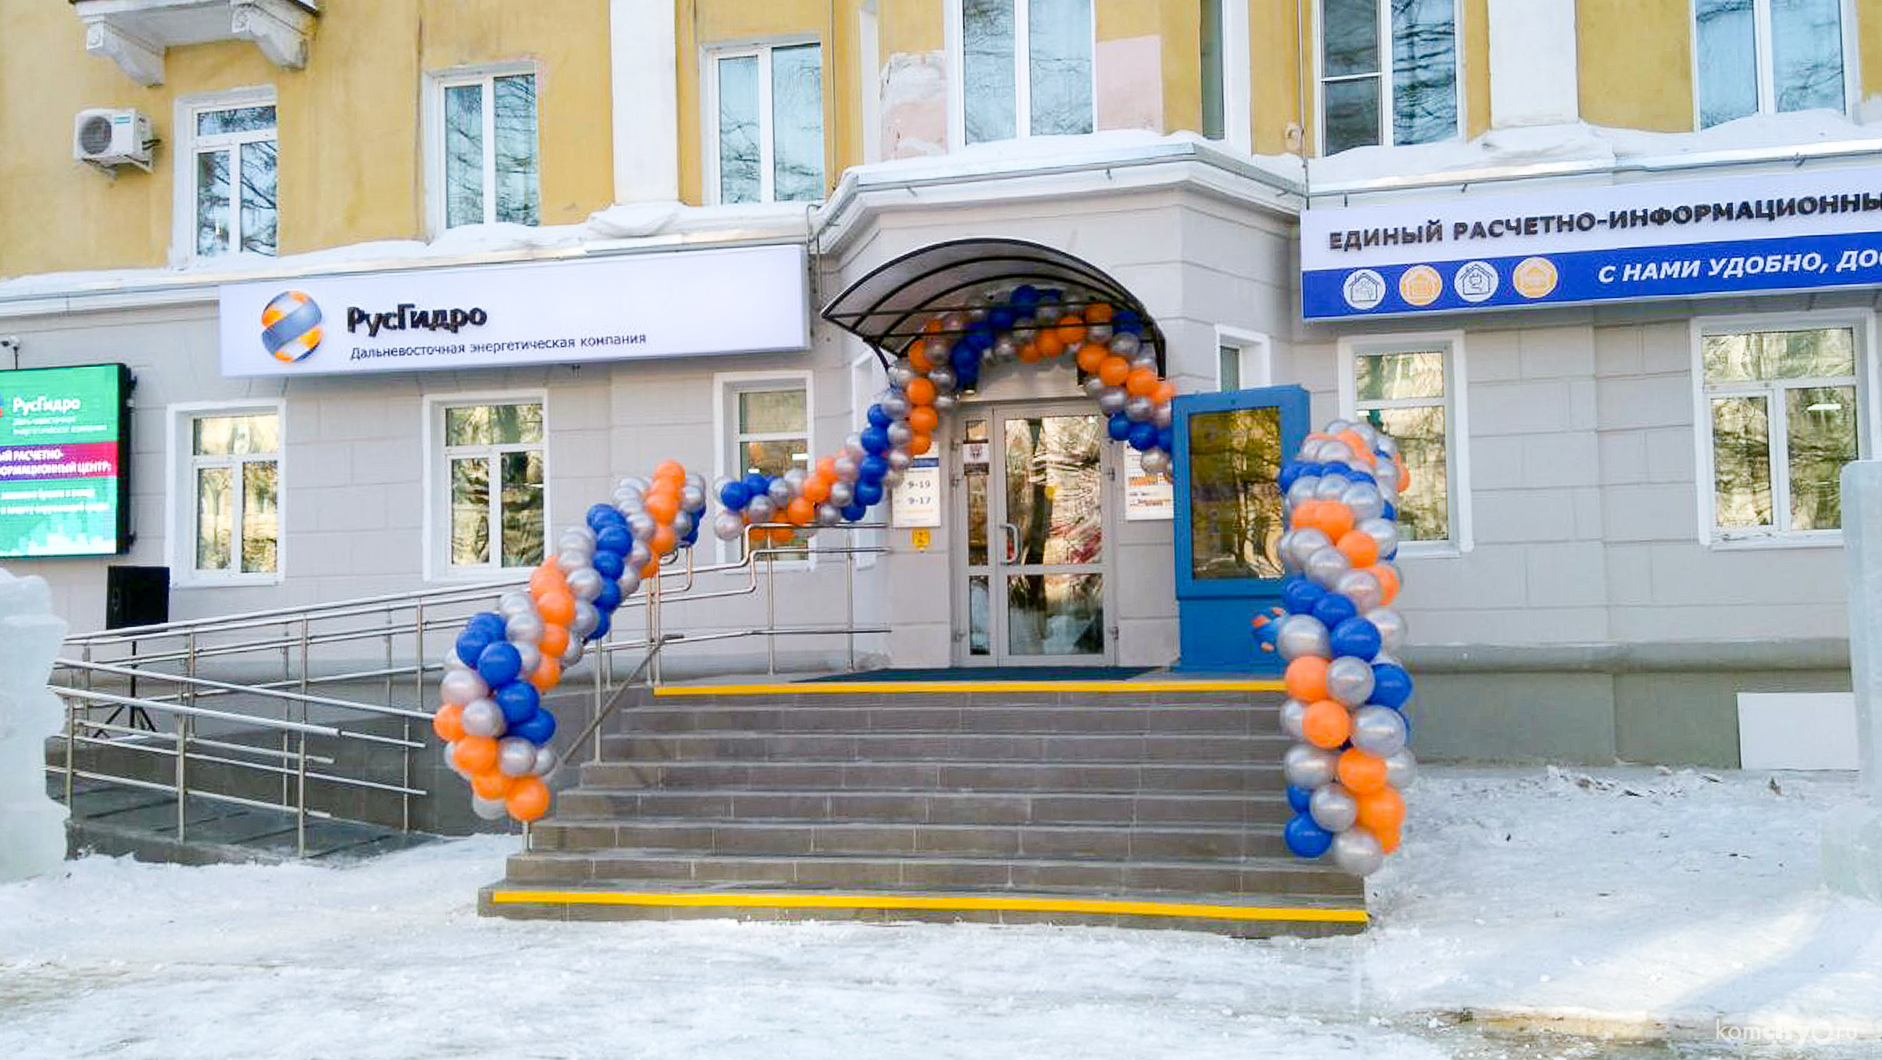 Первый в Хабаровском крае Единый расчётно-информационный центр услуг ЖКХ открыли в Комсомольске-на-Амуре